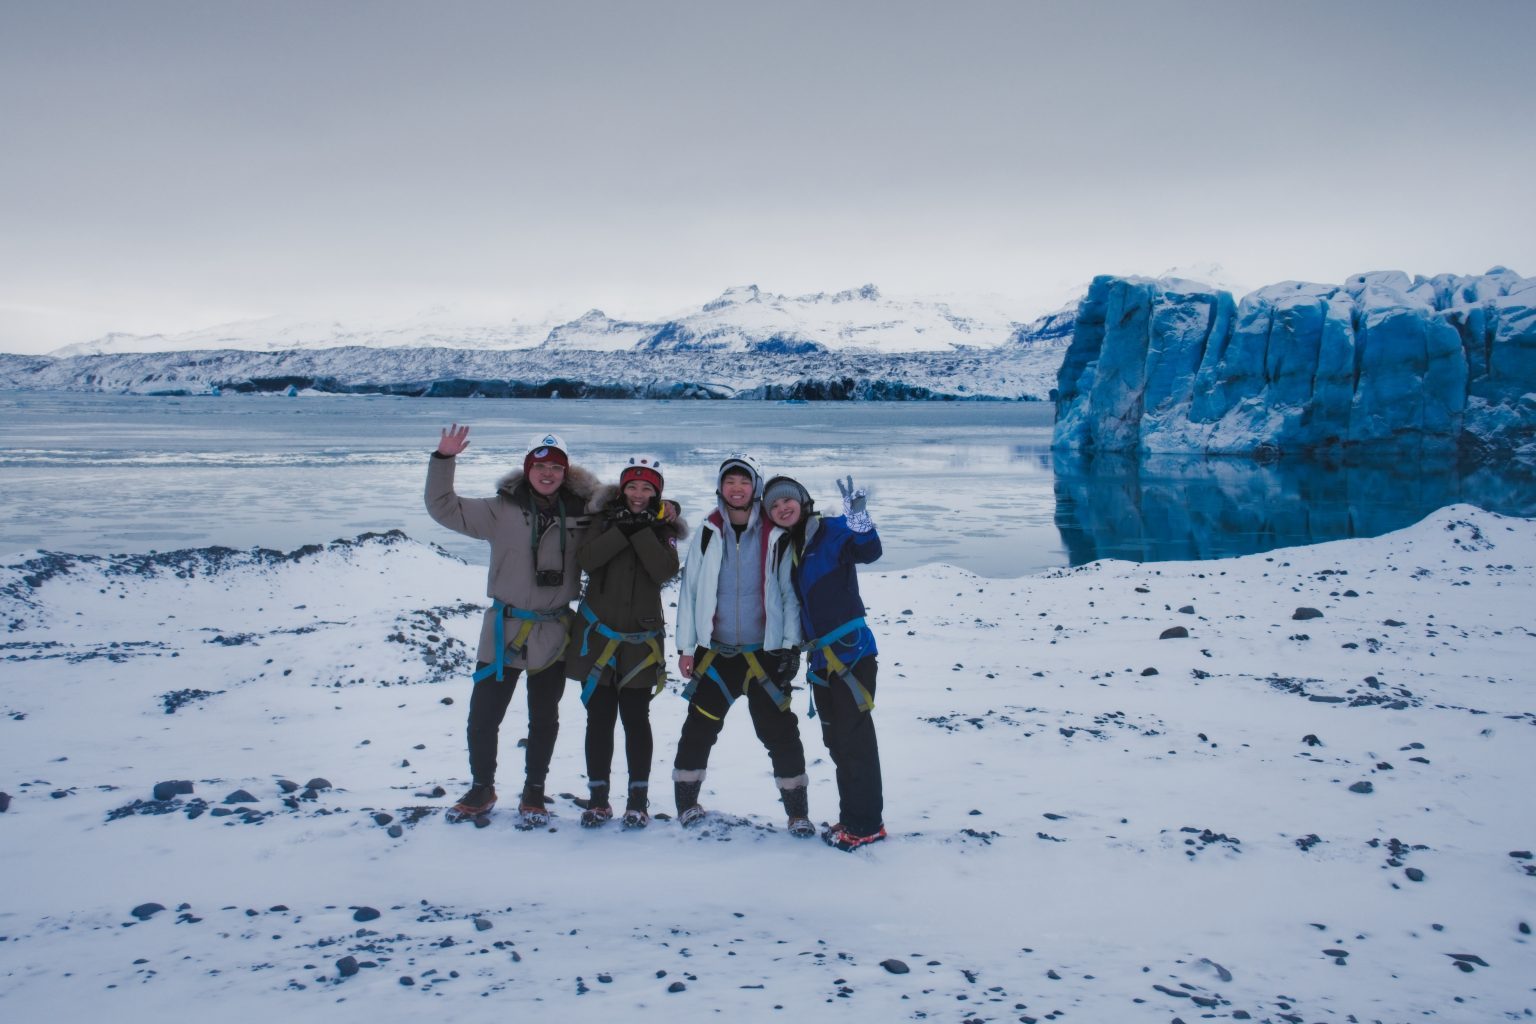 Glacier tour group on a Blue Iceland ice cave tour.